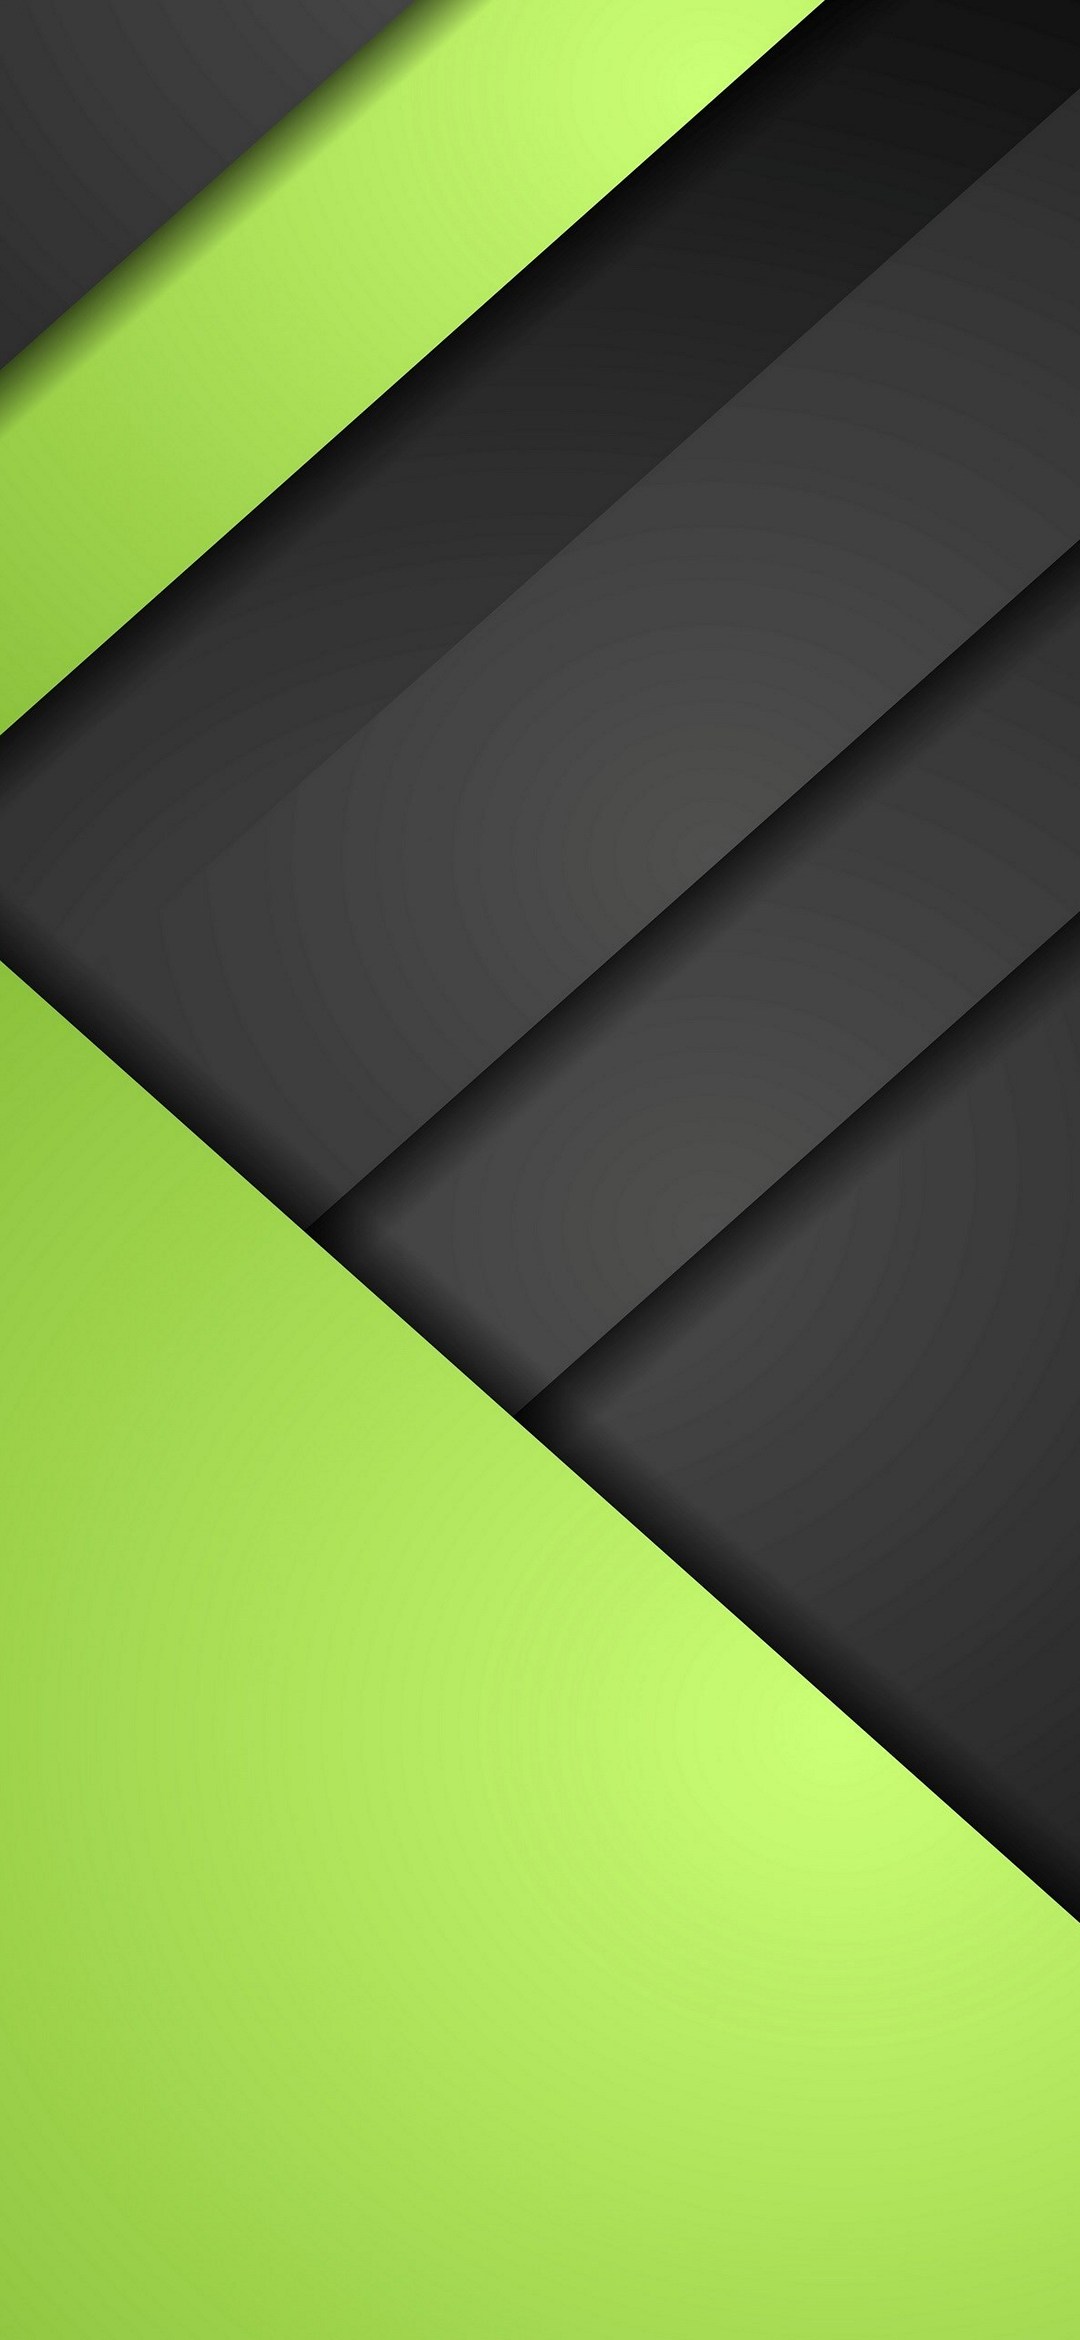 マットな質感 黒の段差 緑 Galaxy A30 Android 壁紙 待ち受け スマラン